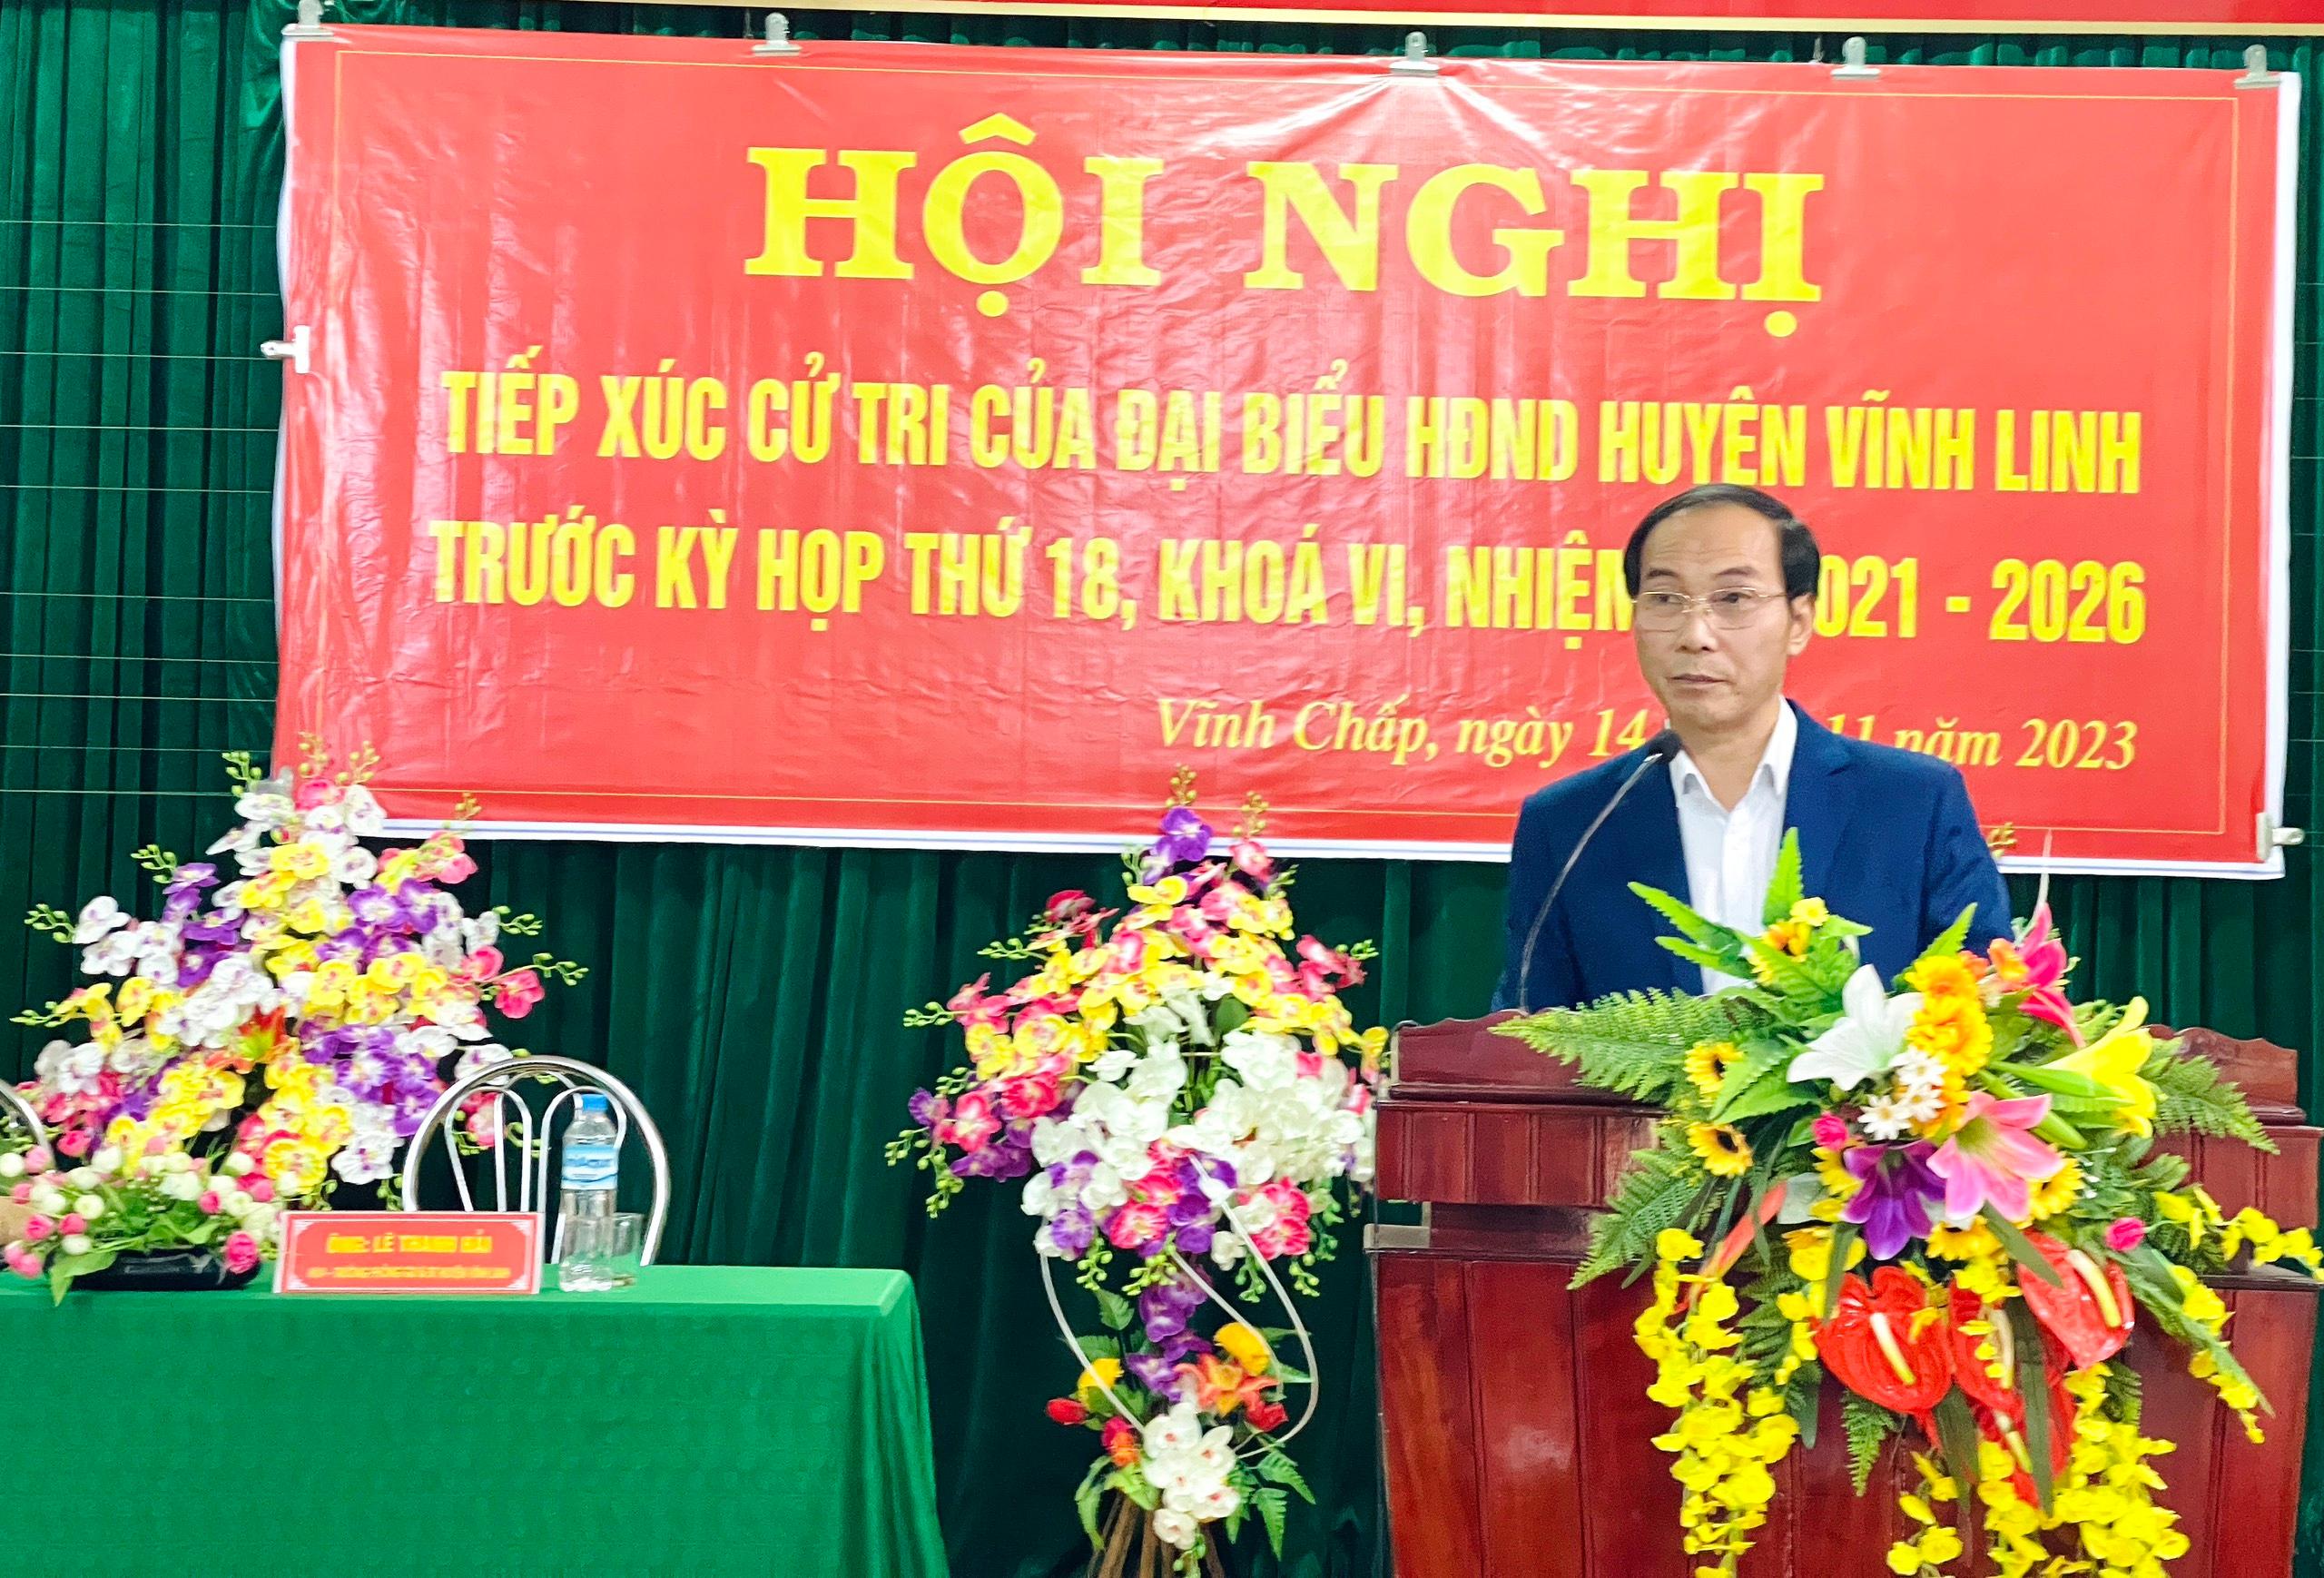 Đại biểu HĐND huyện Vĩnh Linh tiếp xúc với cử tri xã Vĩnh Chấp trước kỳ họp thứ 18, khóa VI, nhiệm kỳ 2021 - 2026